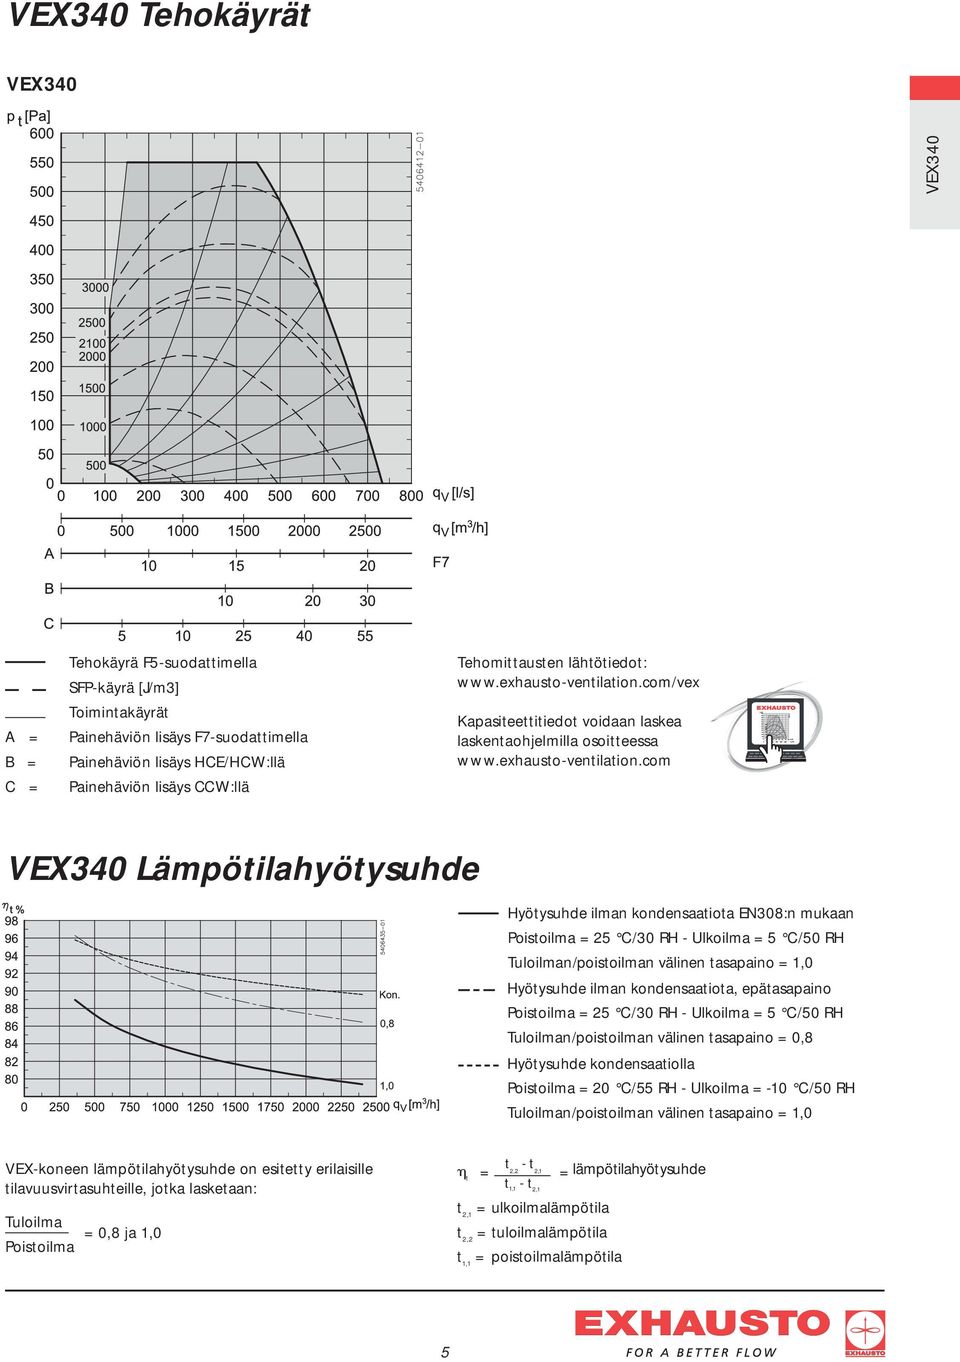 com/vex Kapasiteettitiedot voidaan laskea laskentaohjelmilla osoitteessa www.exhausto-ventilation.